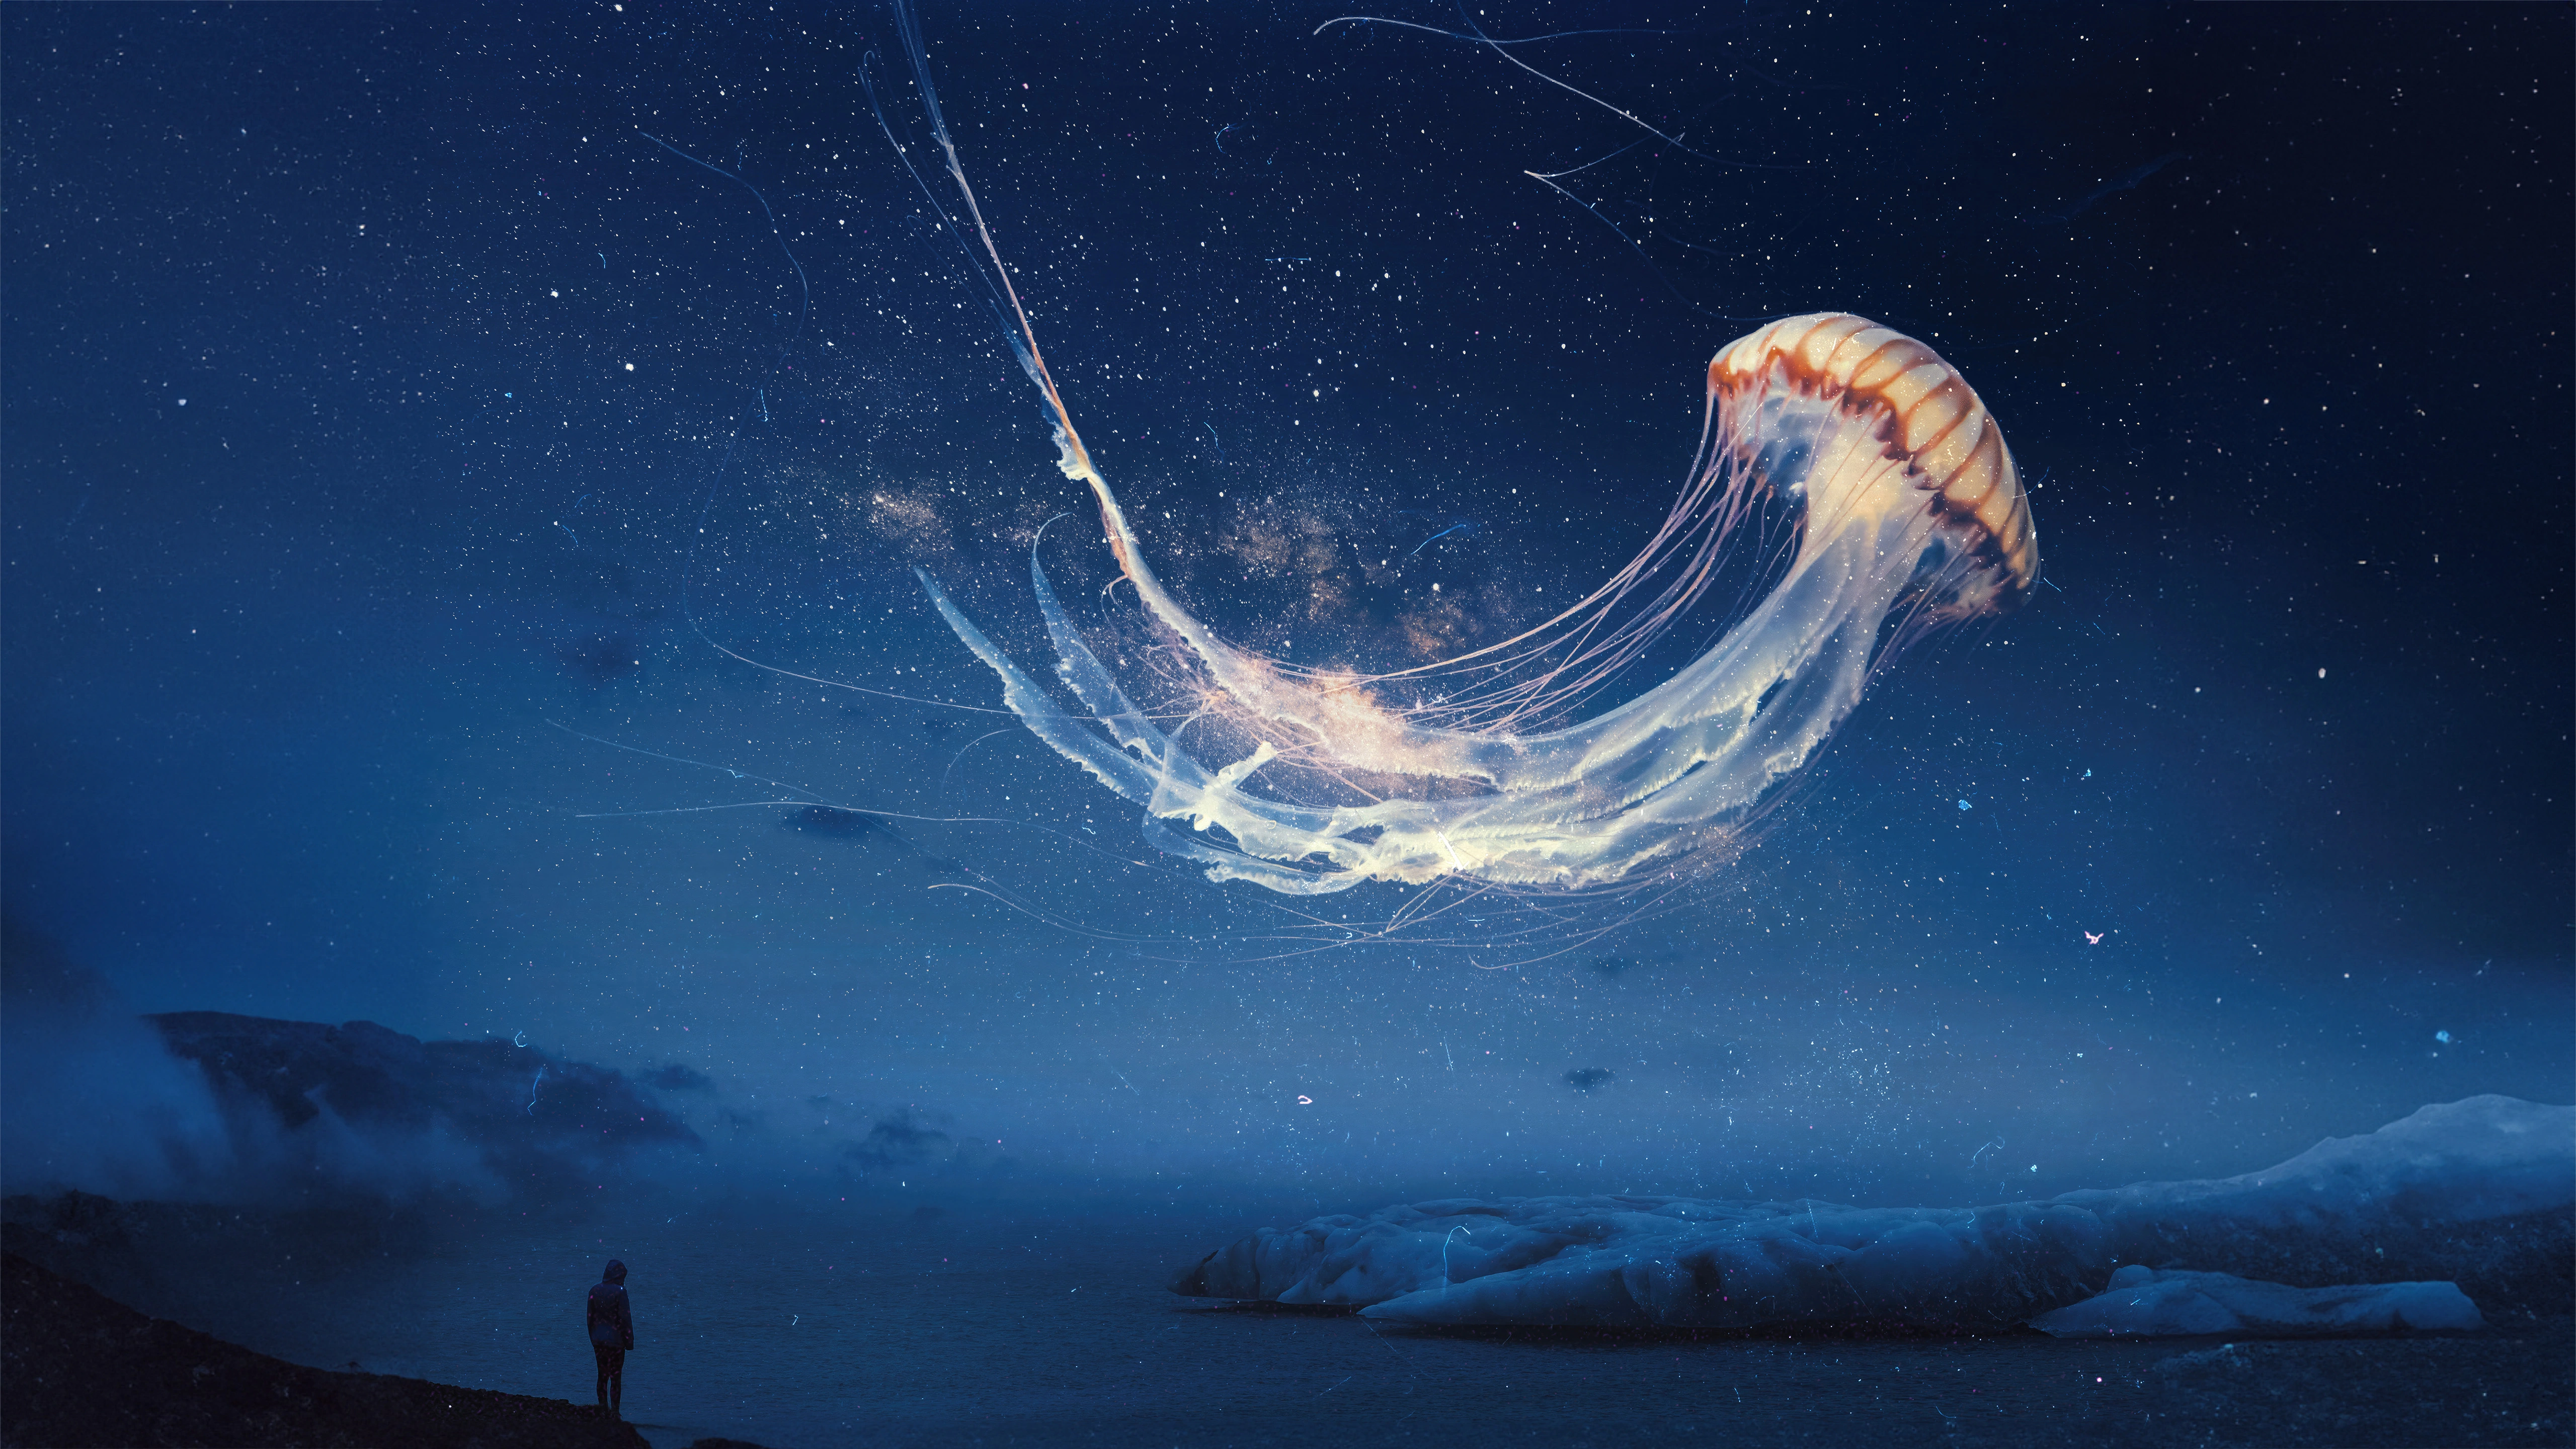 jellyfish dream surreal night sky alone ut.jpg